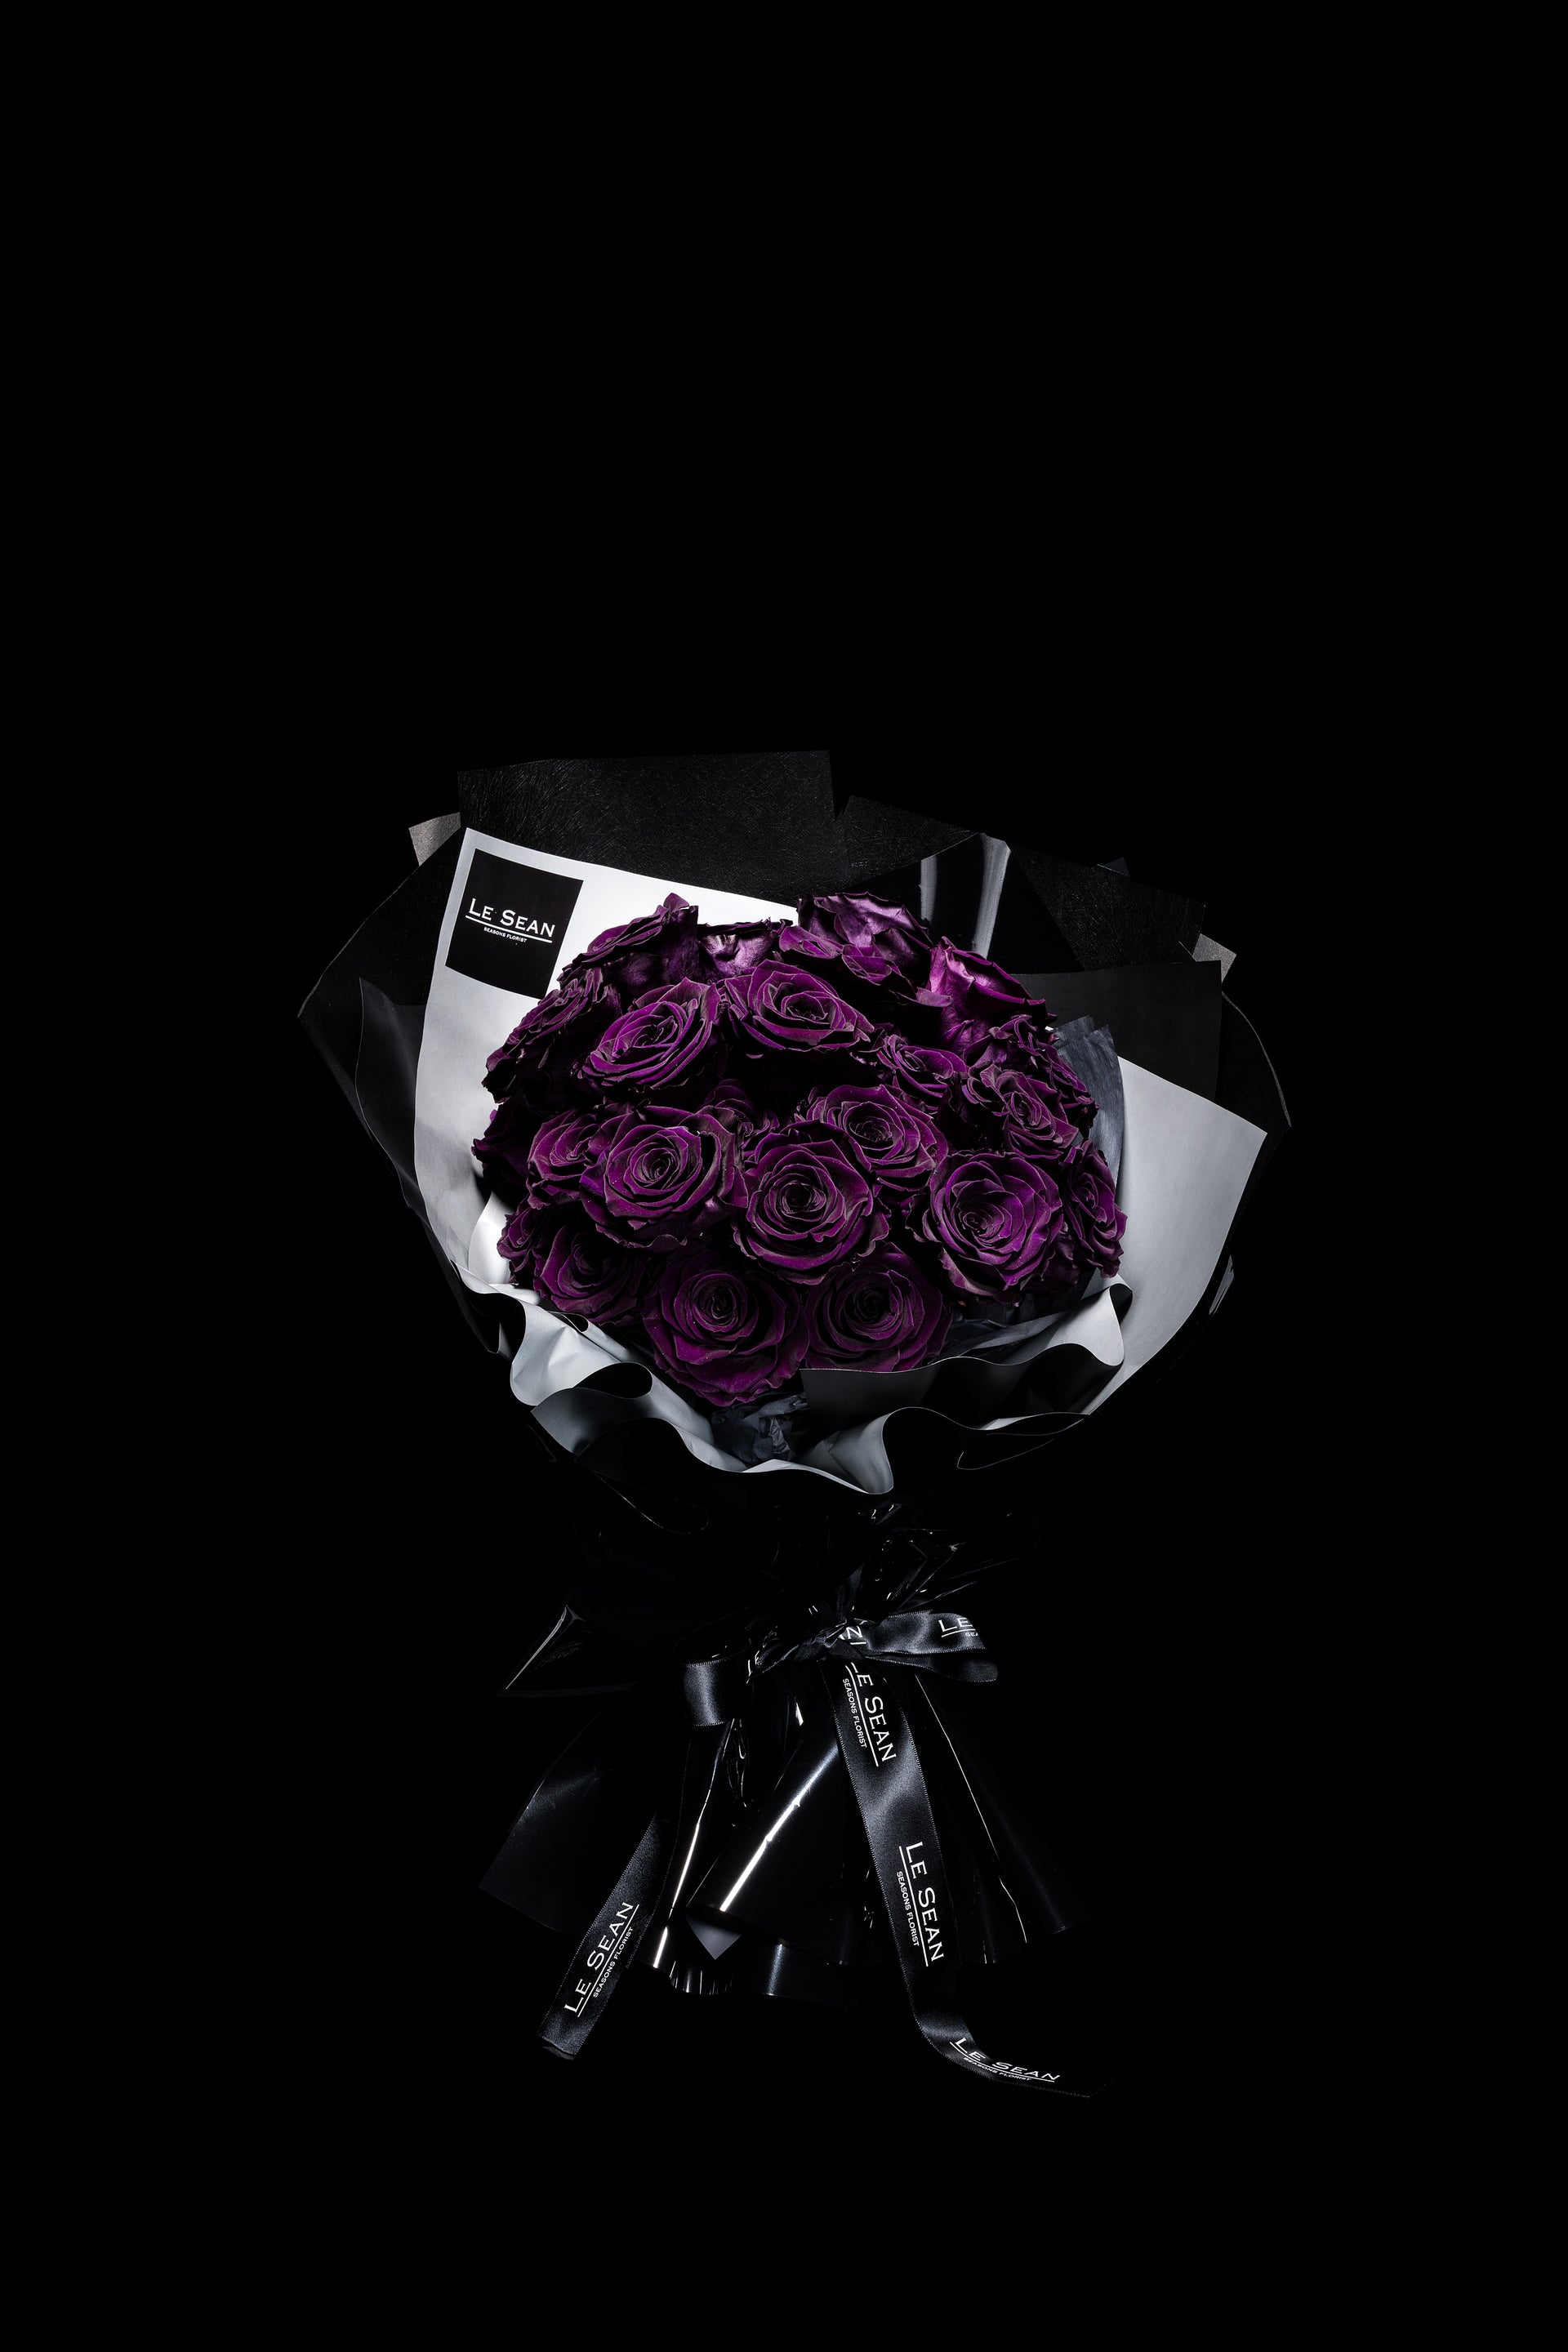 Le Sean Preserved Bouquet - Royal Purple